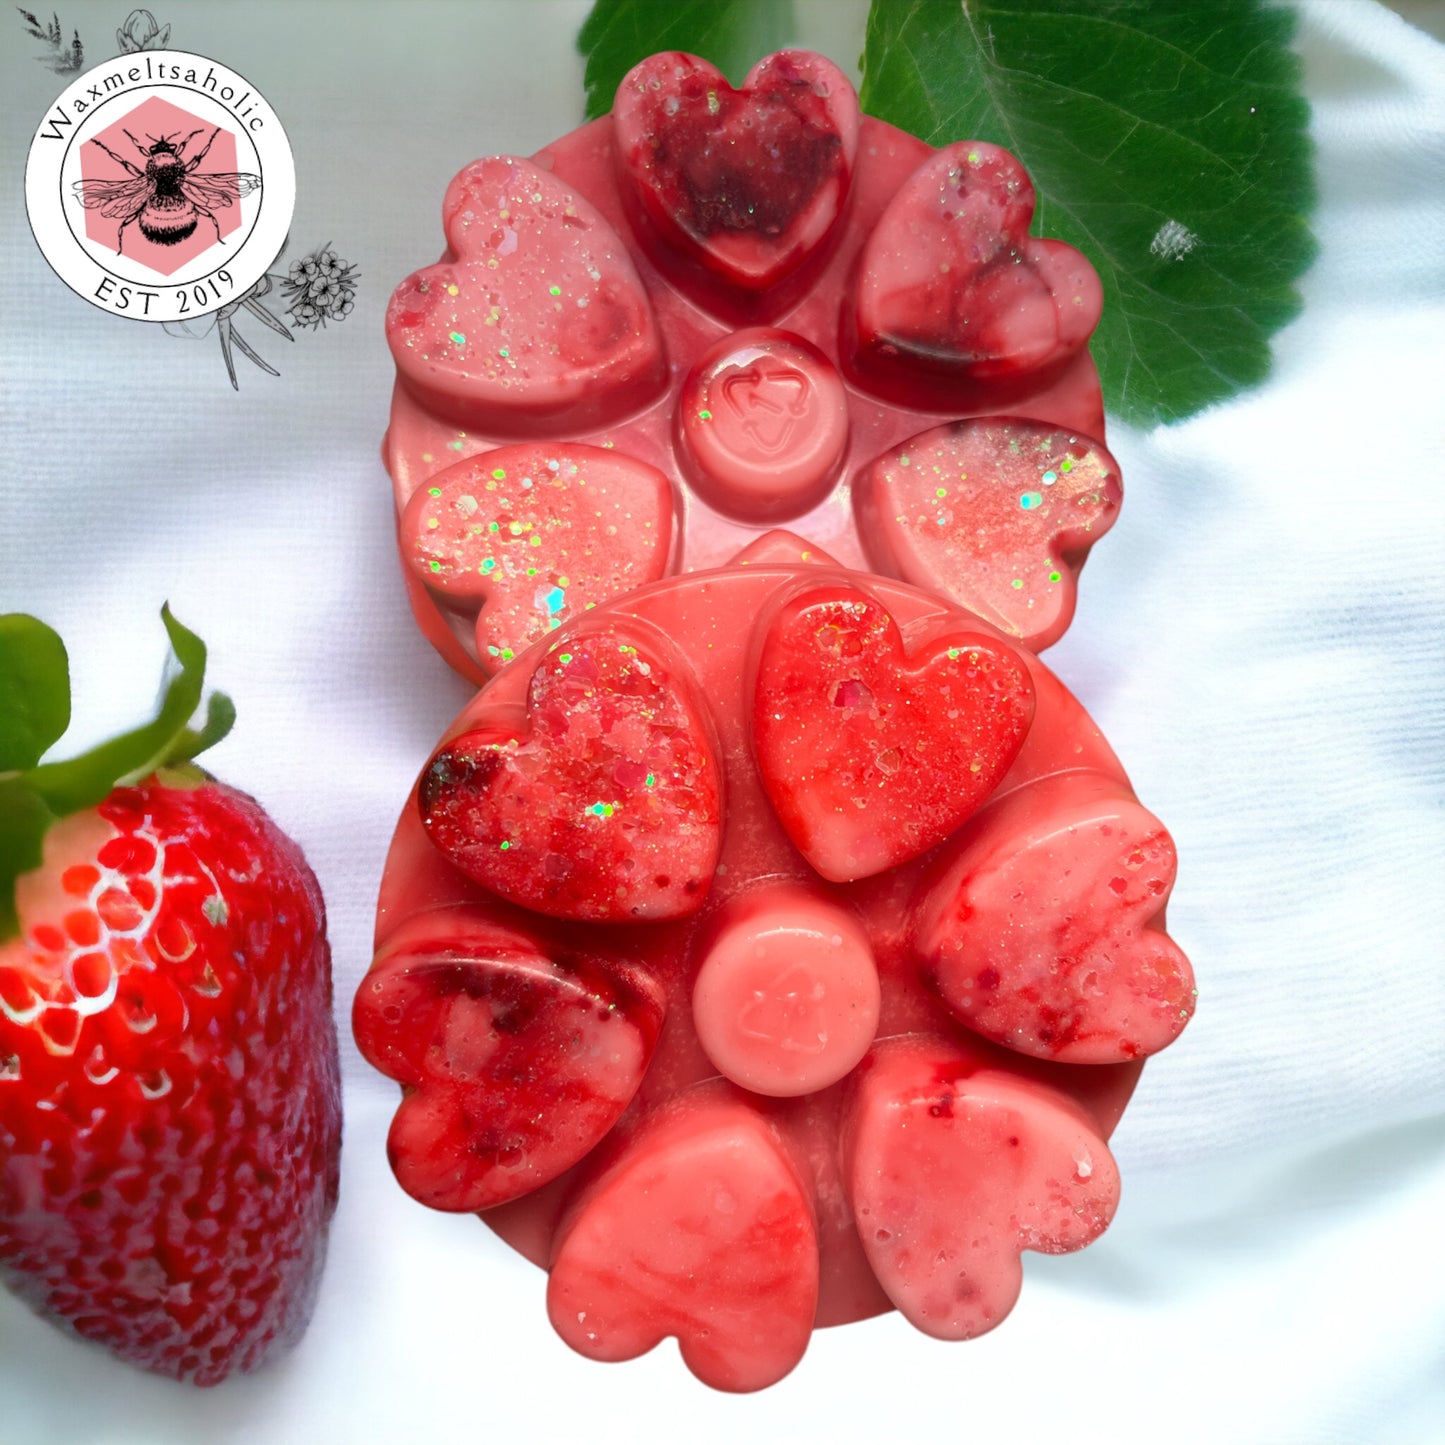 Strawberry & rhubarb